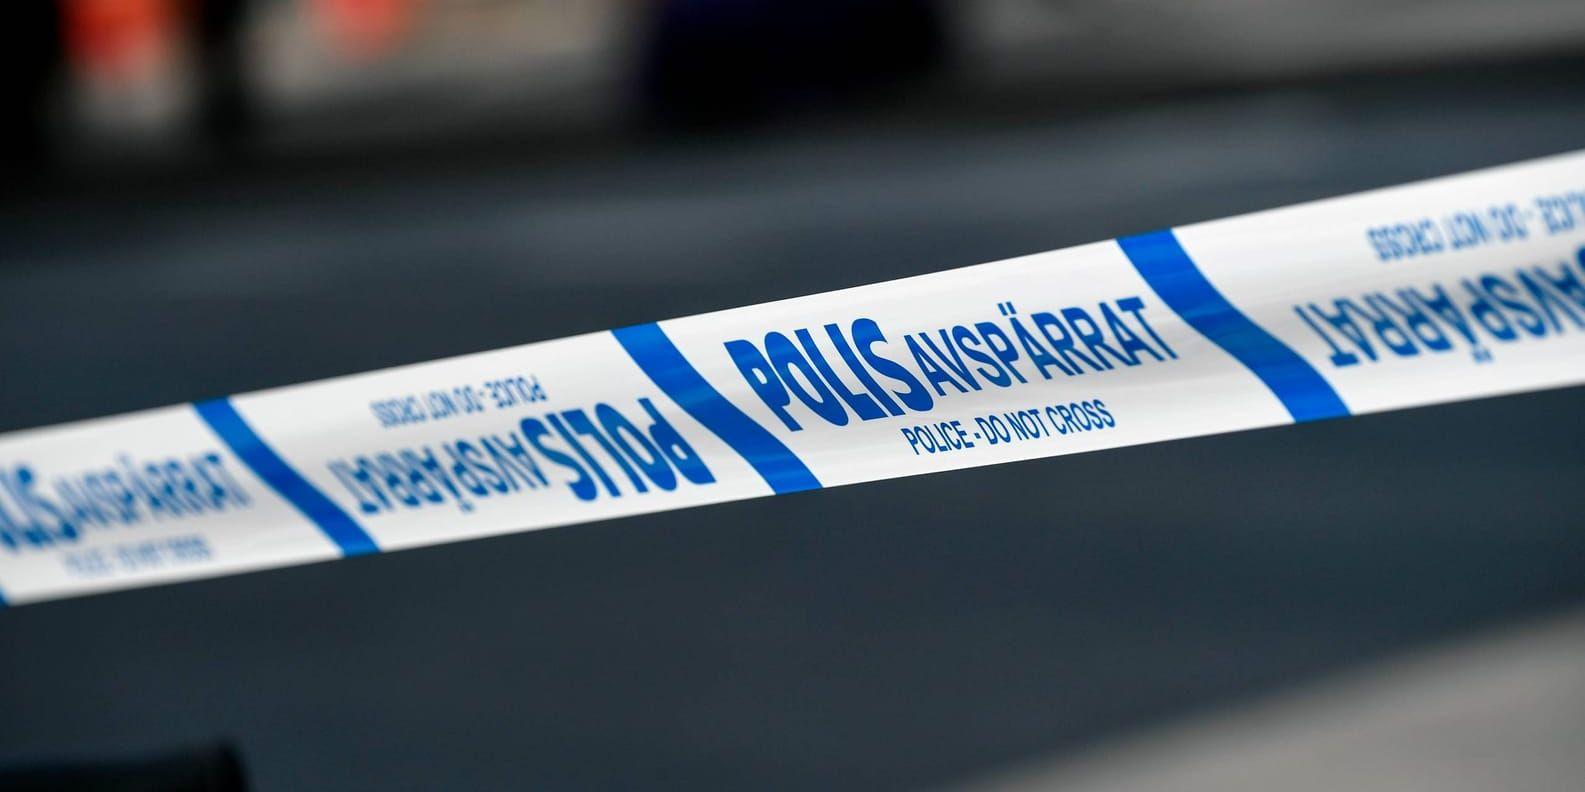 Efter en skottlossning i Linköping är en förundersökning inledd om försök till mord och en del tekniska fynd har gjorts enligt polisen. Arkivbild.